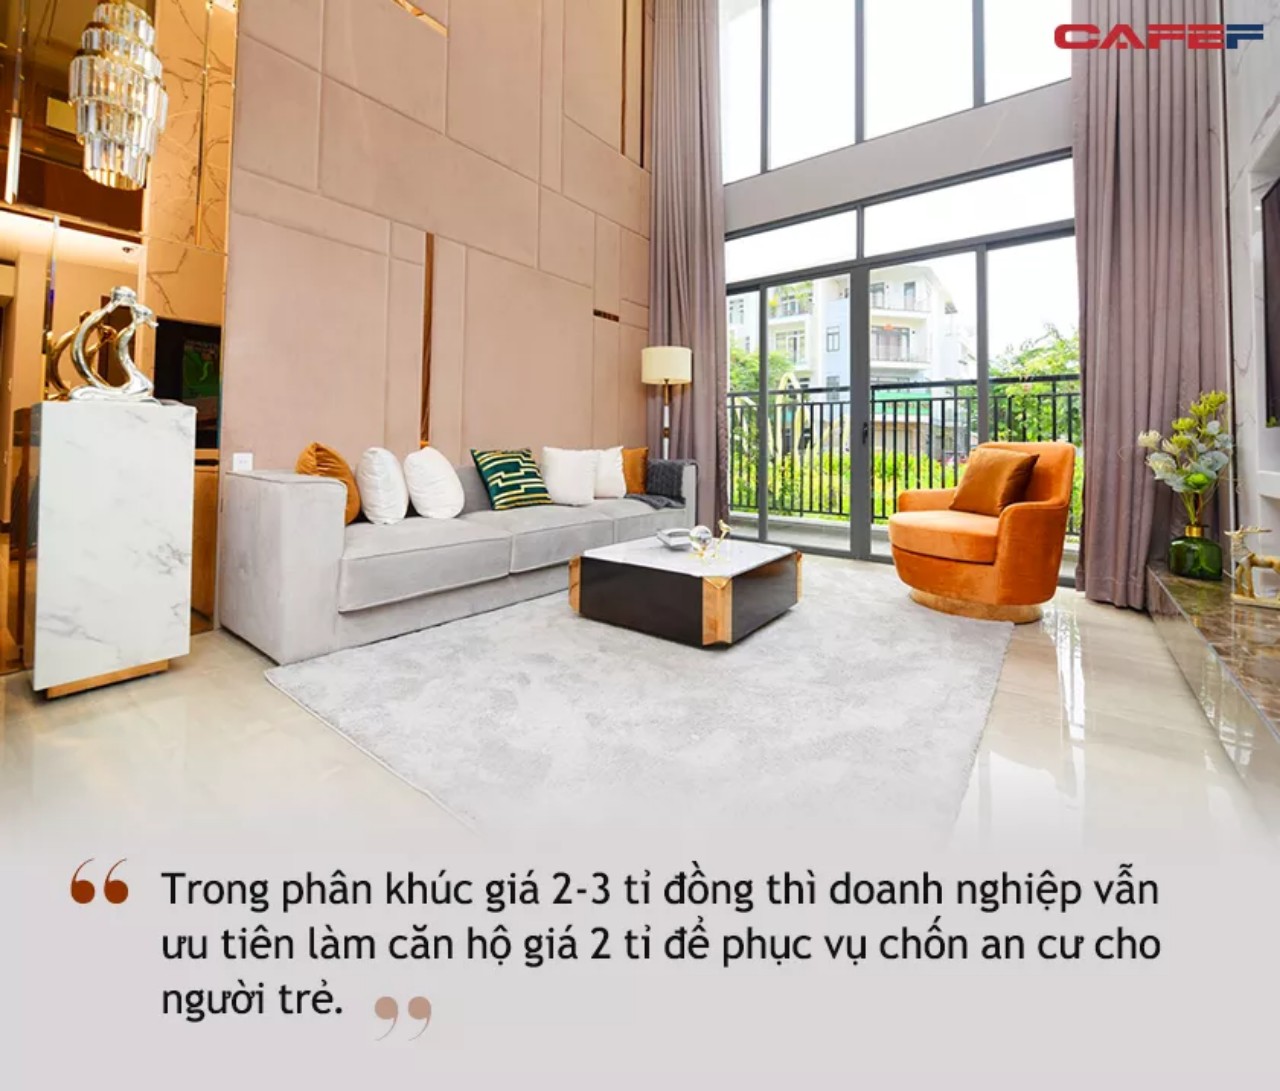 Chân dung CEO Phú Đông Group Ngô Quang Phúc - Từ nhân viên bán BĐS đến thuyền trưởng của những cao ốc chung cư cho giới trẻ - Ảnh 2.